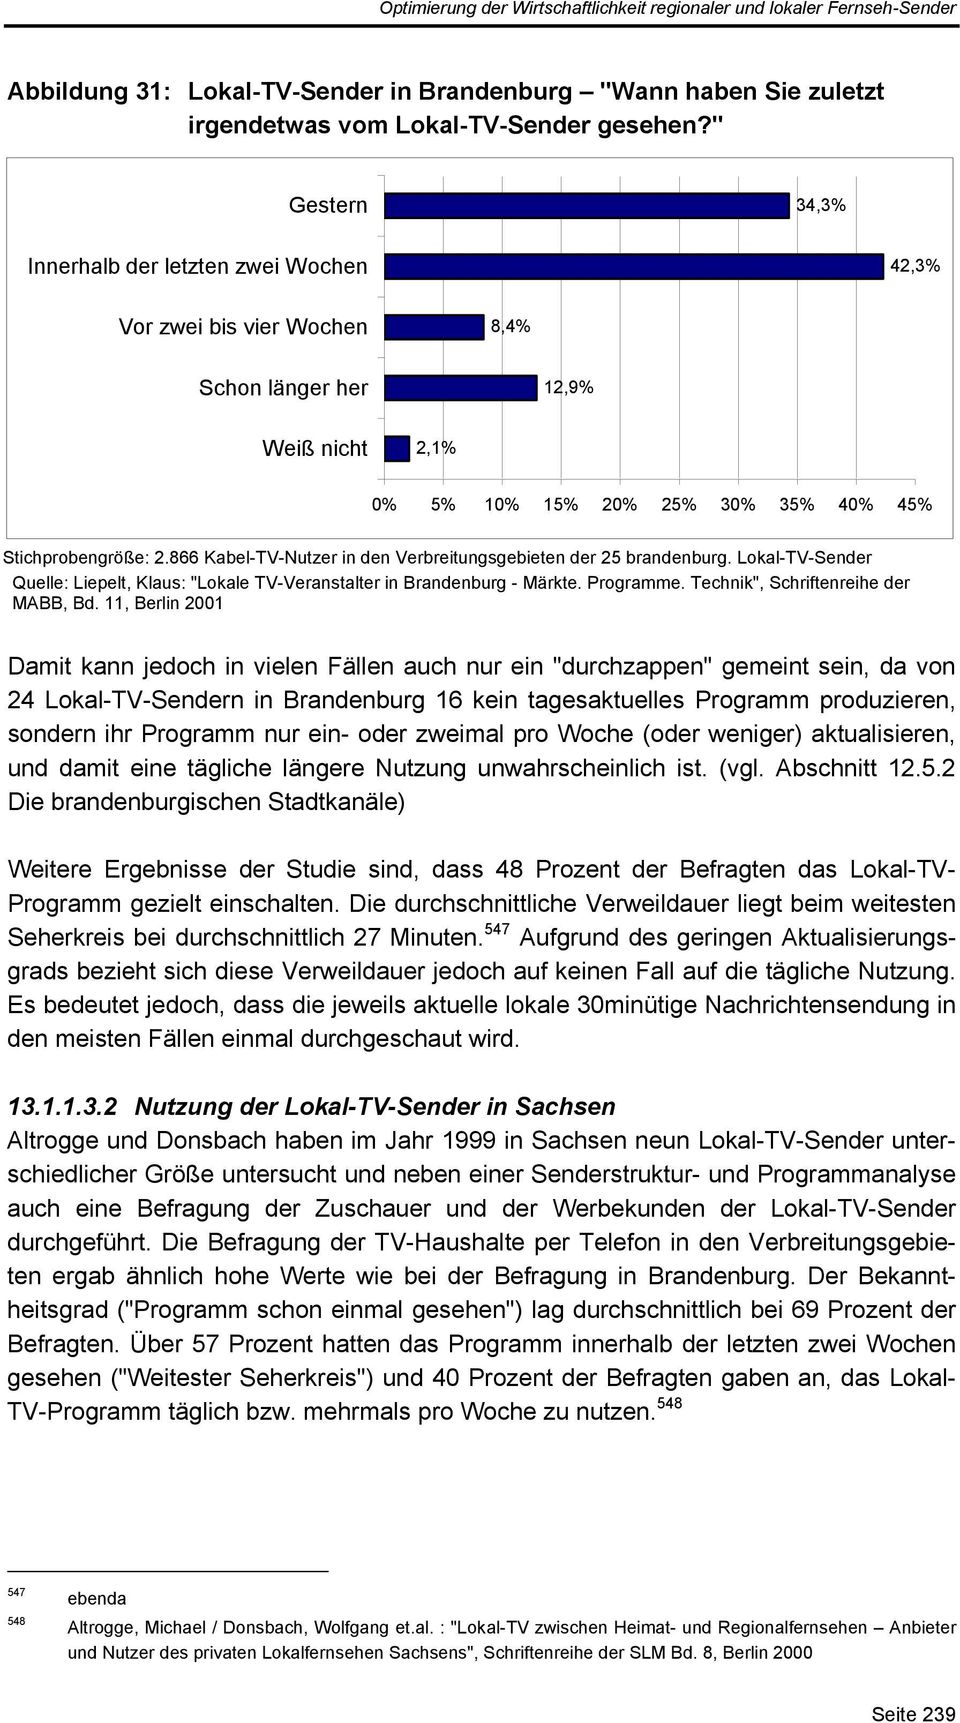 866 Kabel-TV-Nutzer in den Verbreitungsgebieten der 25 brandenburg. Lokal-TV-Sender Quelle: Liepelt, Klaus: "Lokale TV-Veranstalter in Brandenburg - Märkte. Programme.